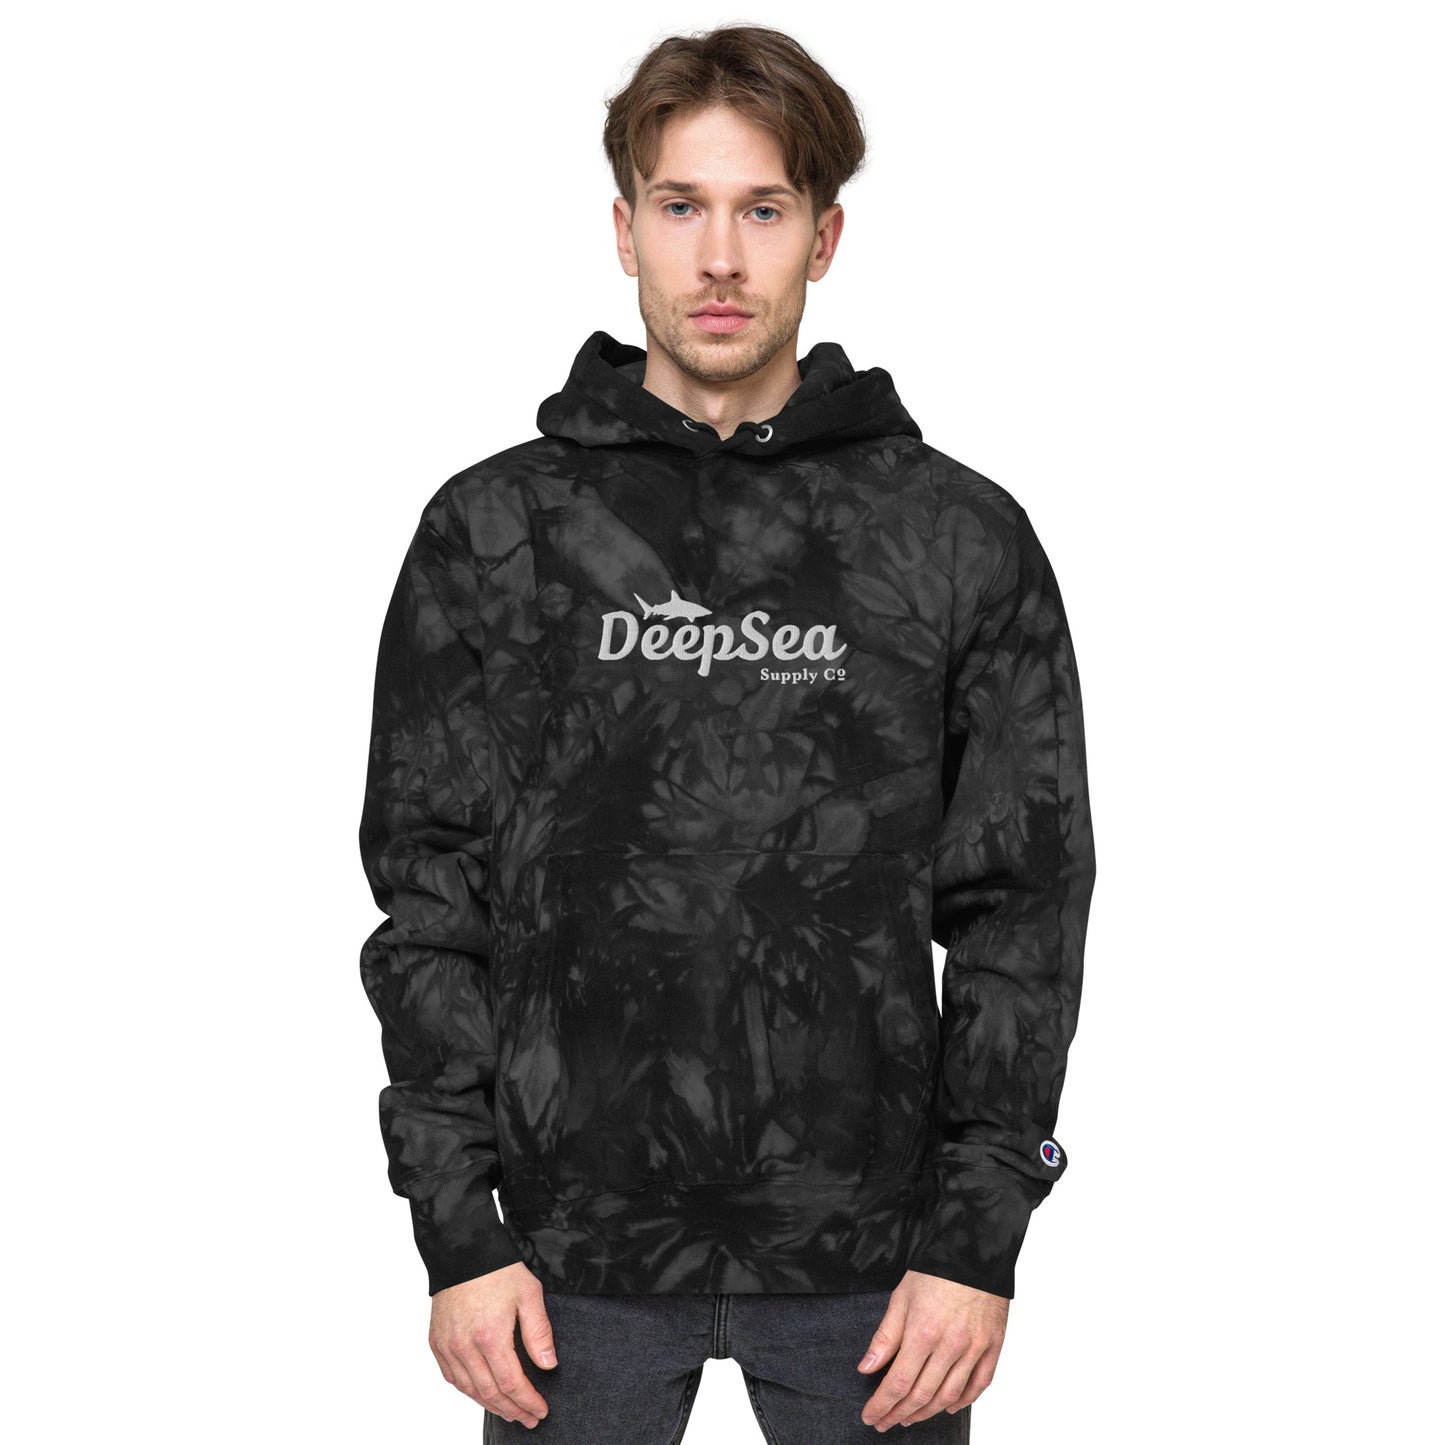 DeepSea Co. Unisex Champion tie-dye hoodie